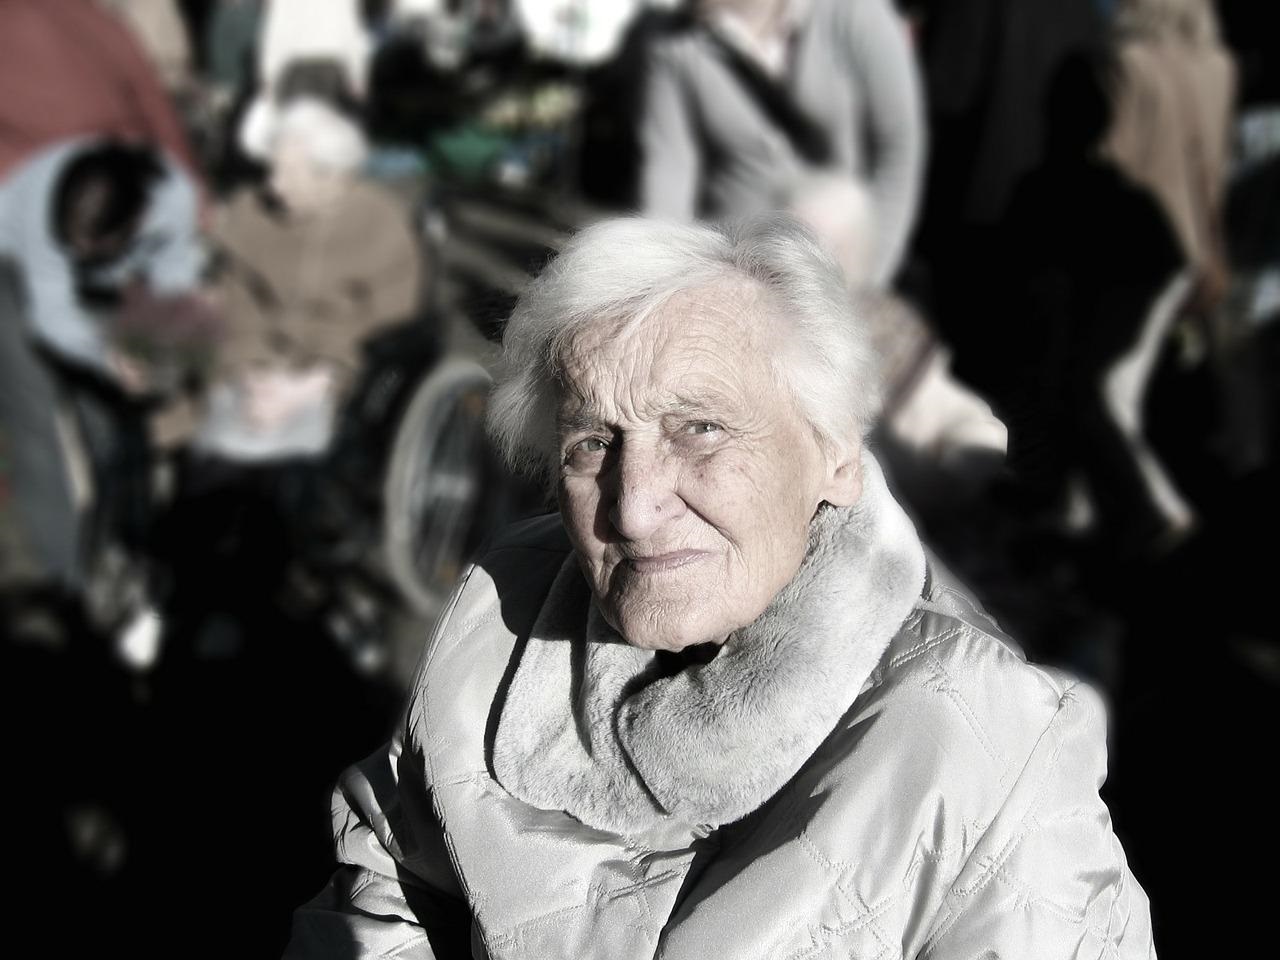 Ältere Dame mit kurzen, weißen Haaren blickt nachdenklich in die Kamera. Im Hintergrund sind weitere Personen zu erahnen.